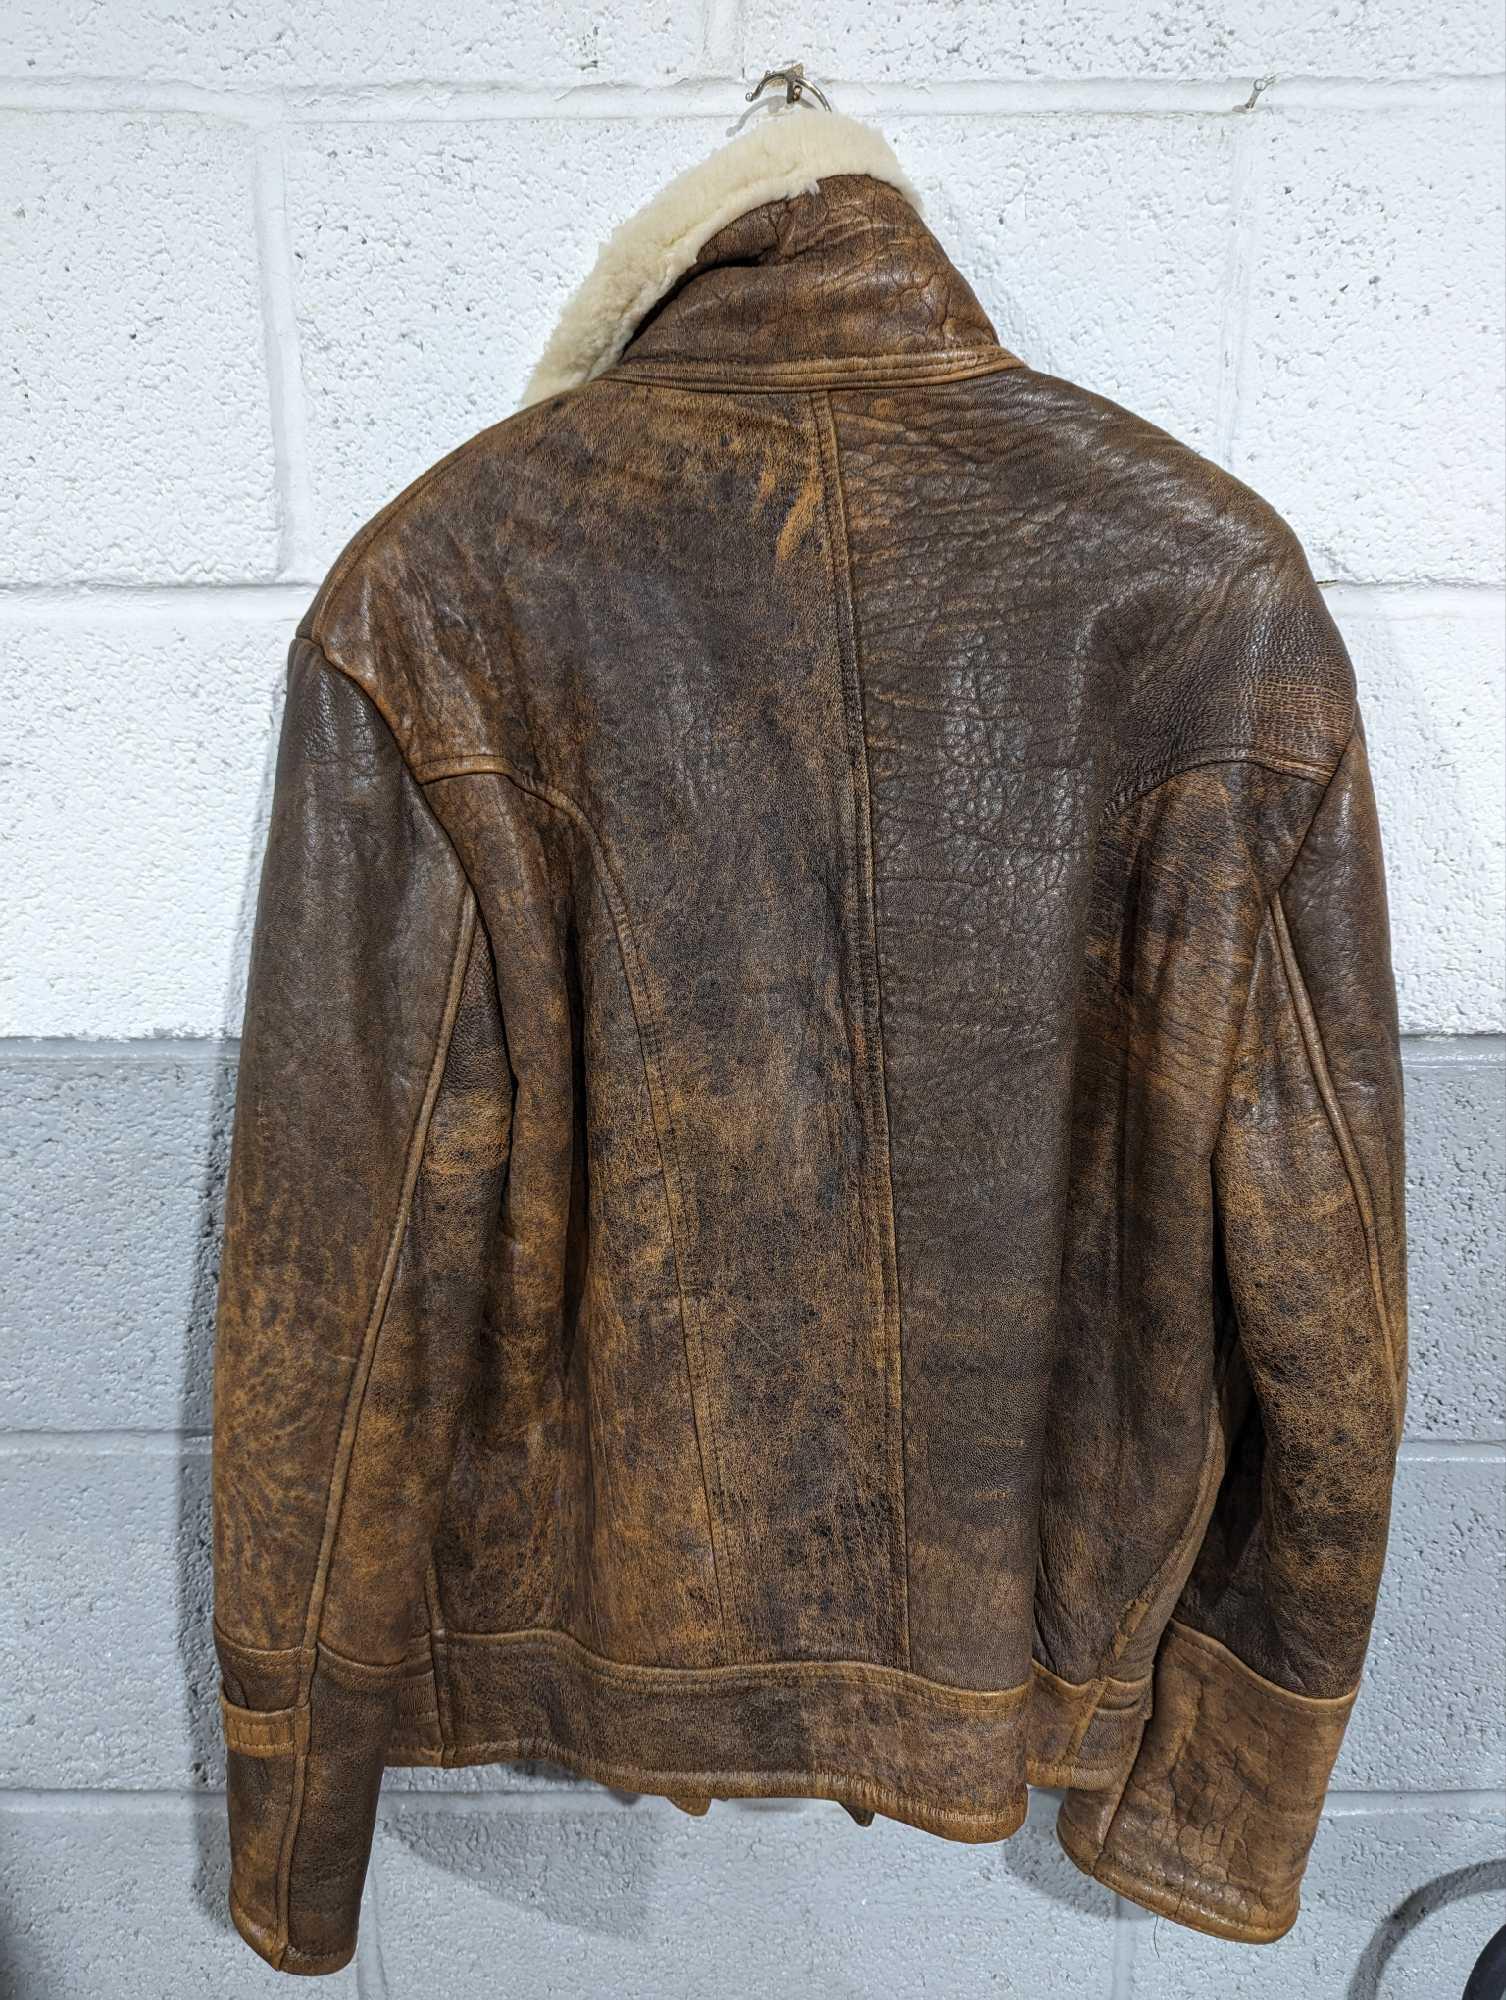 A sheepskin bomber style jacket - Image 2 of 7